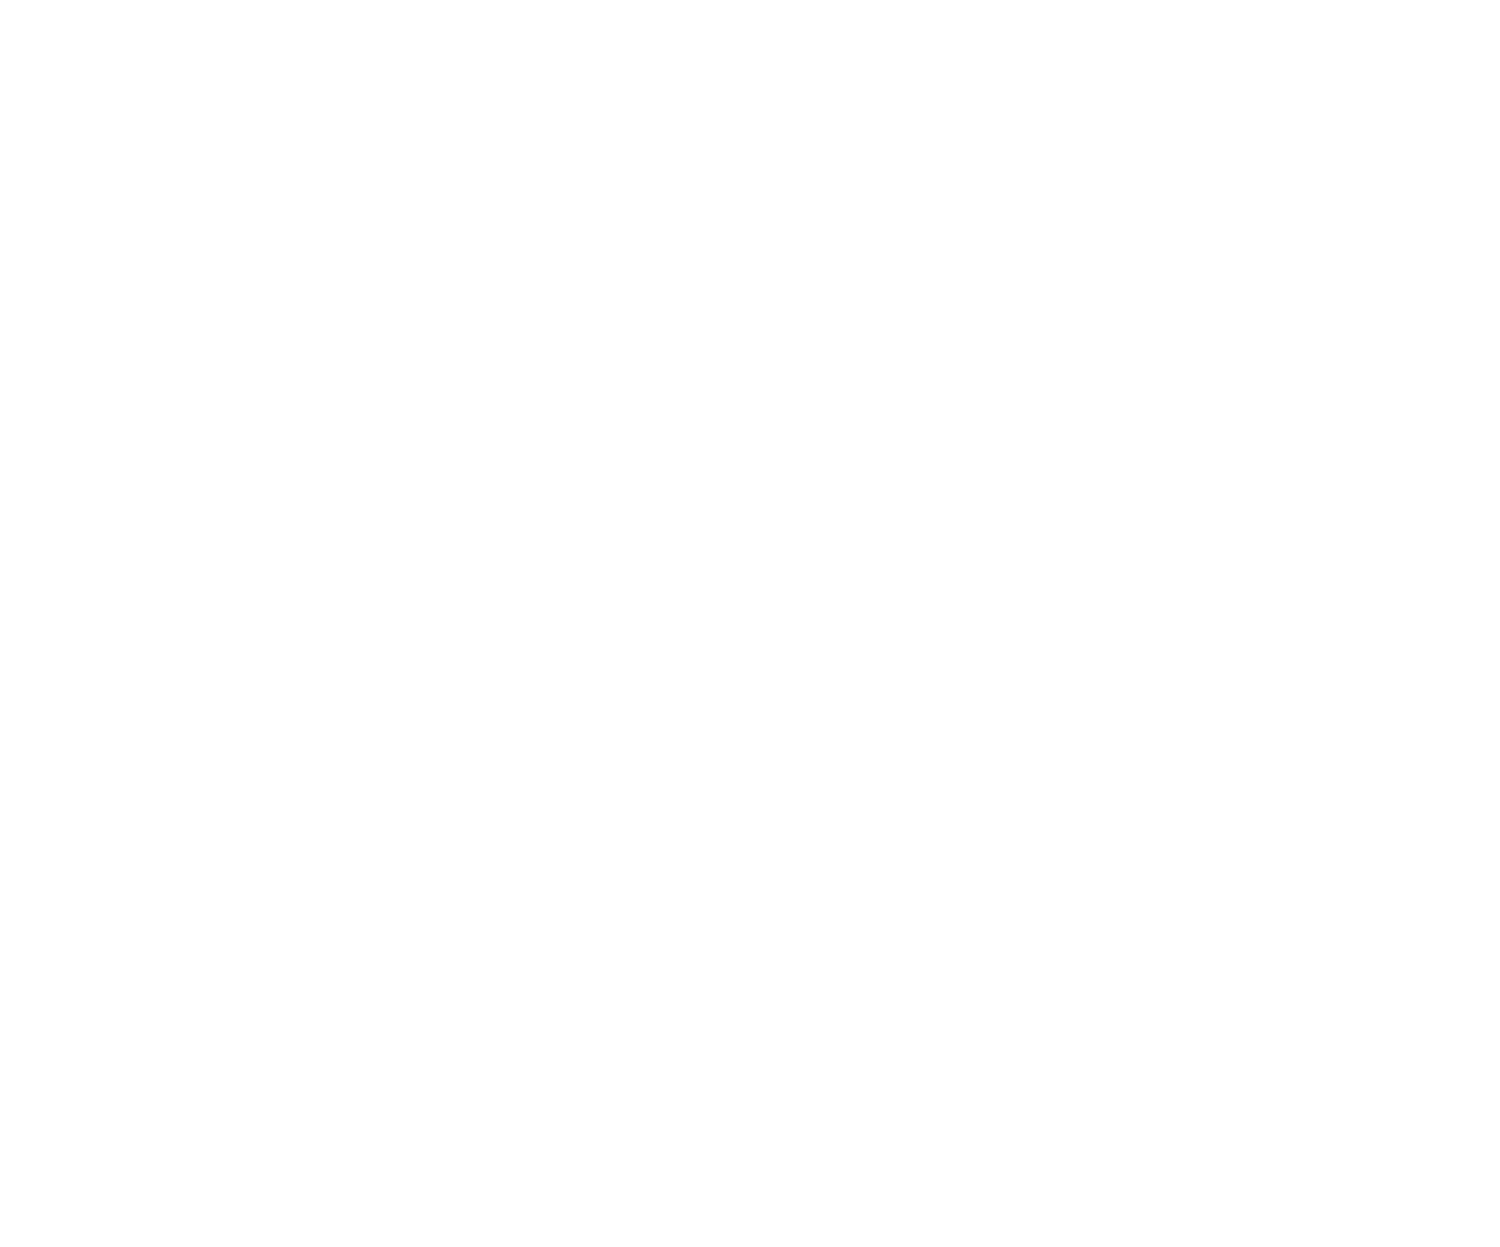 Clare Cowan Vocals